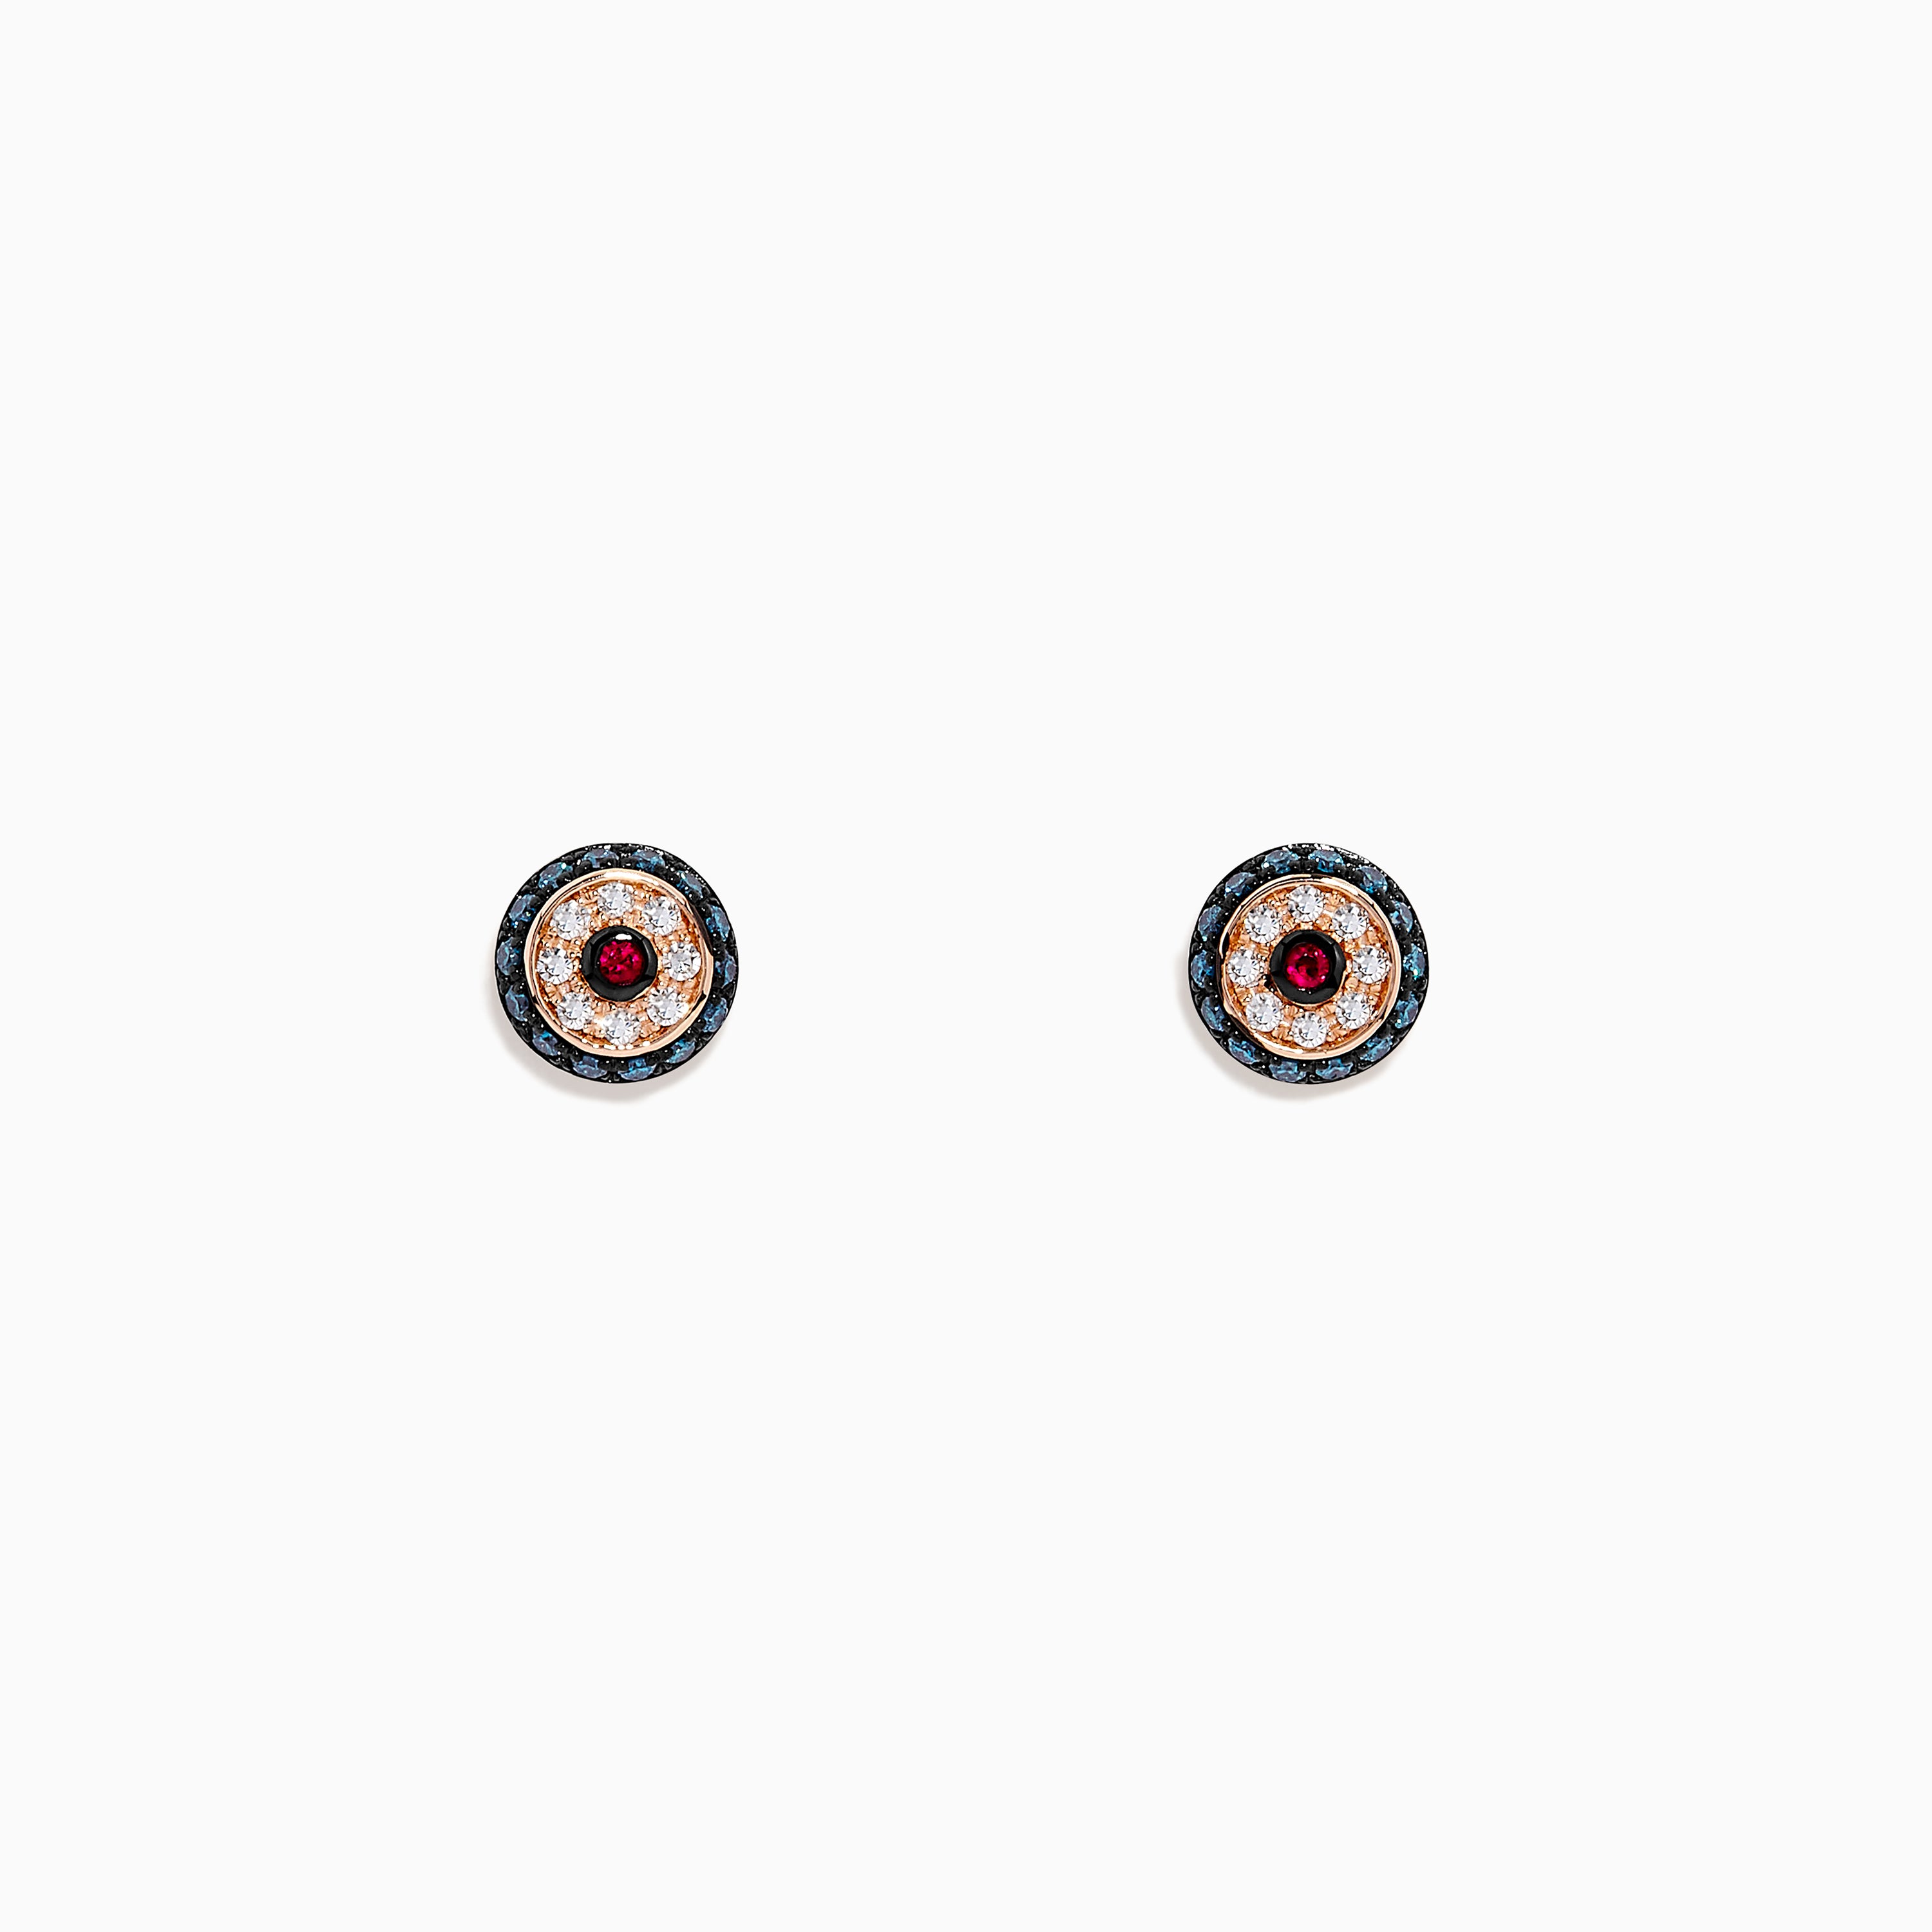 Effy Novelty 14K Gold Ruby, White & Blue Diamond Evil Eye Earrings, 0.26 TW